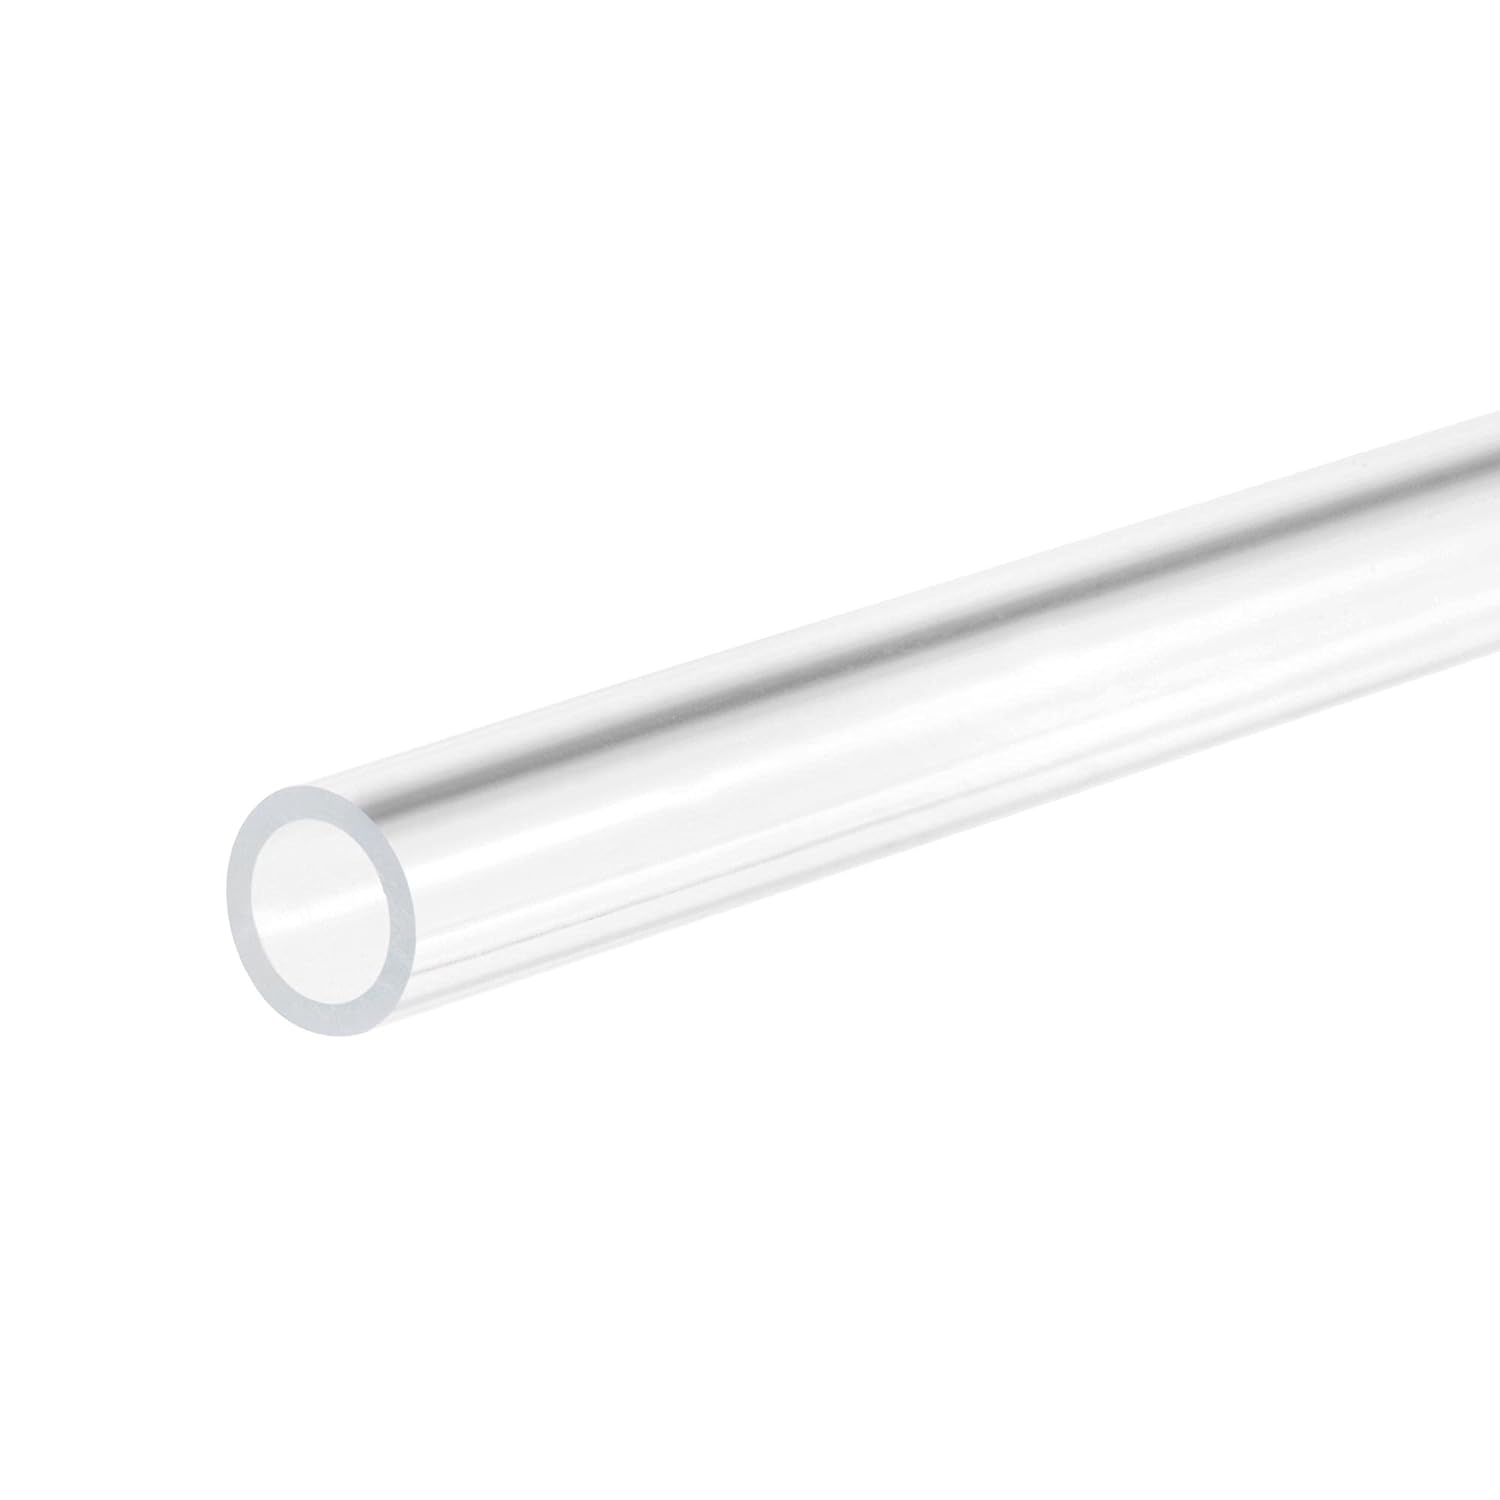 DVH Tube Acrylic rigide 3/5 mm longueur 32,5 cm pour pompe doseuse et autres usages